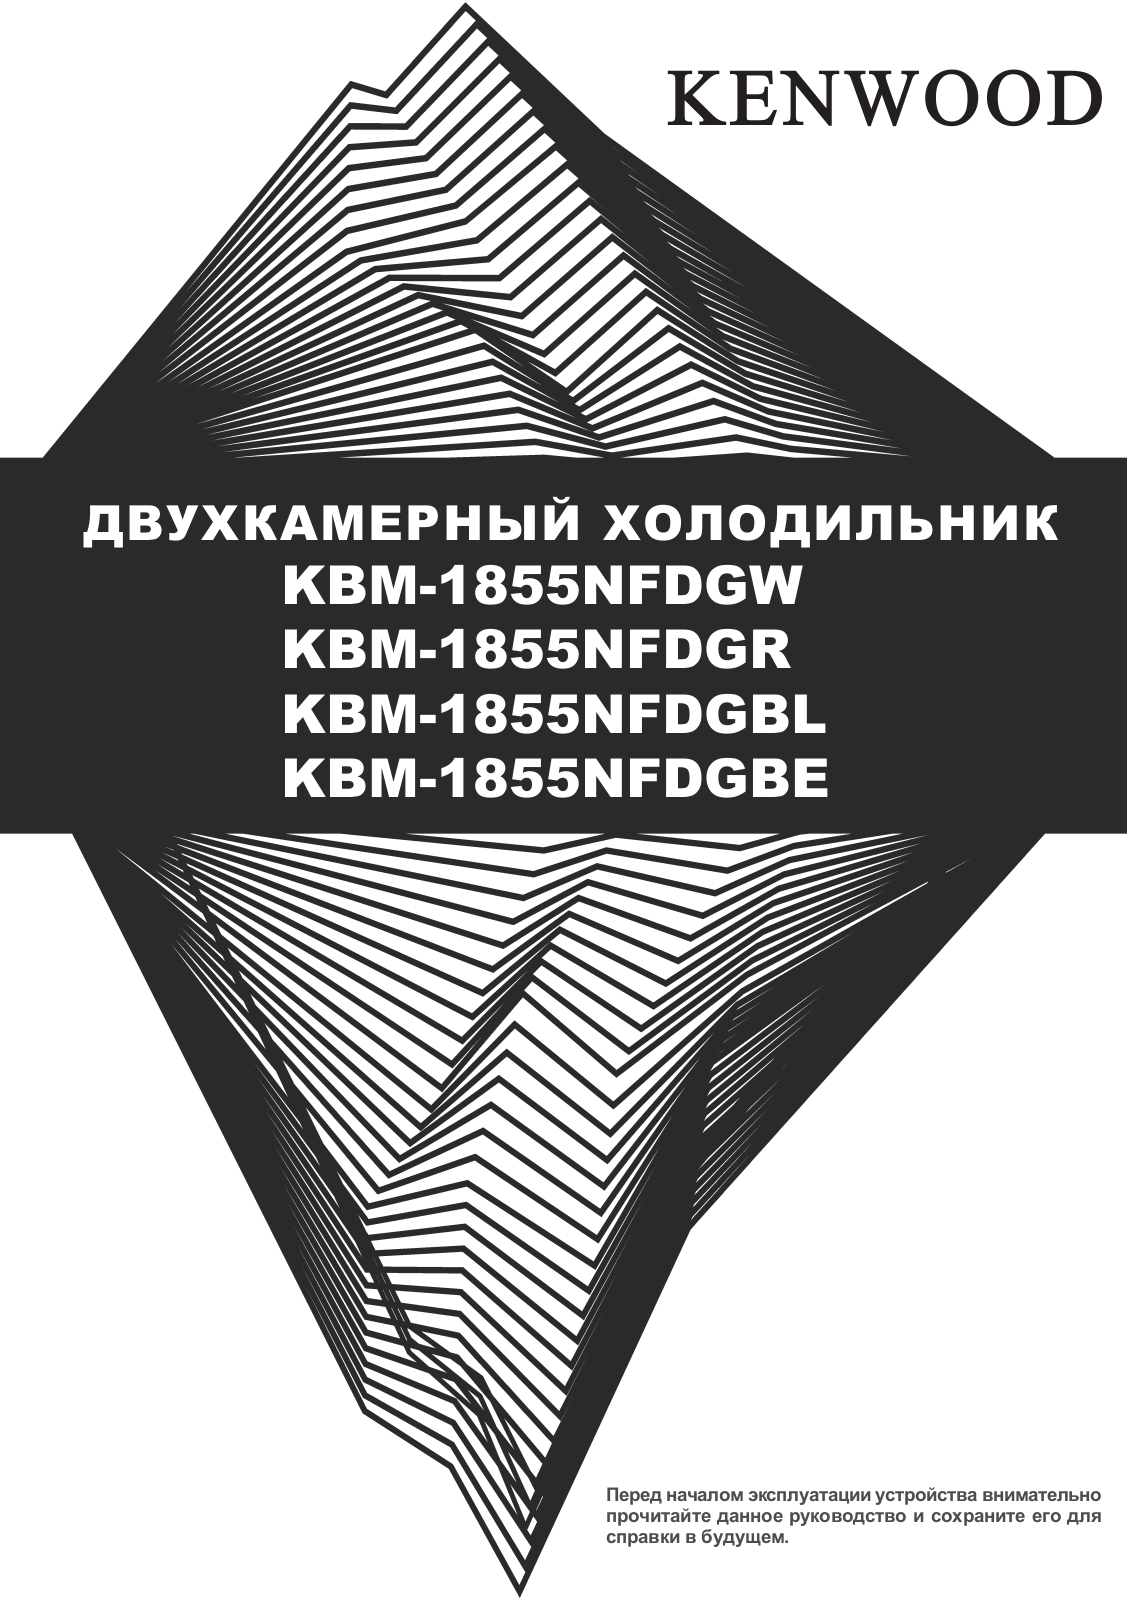 Kenwood KBM-1855NFDGW, KBM-1855NFDGBL User Manual